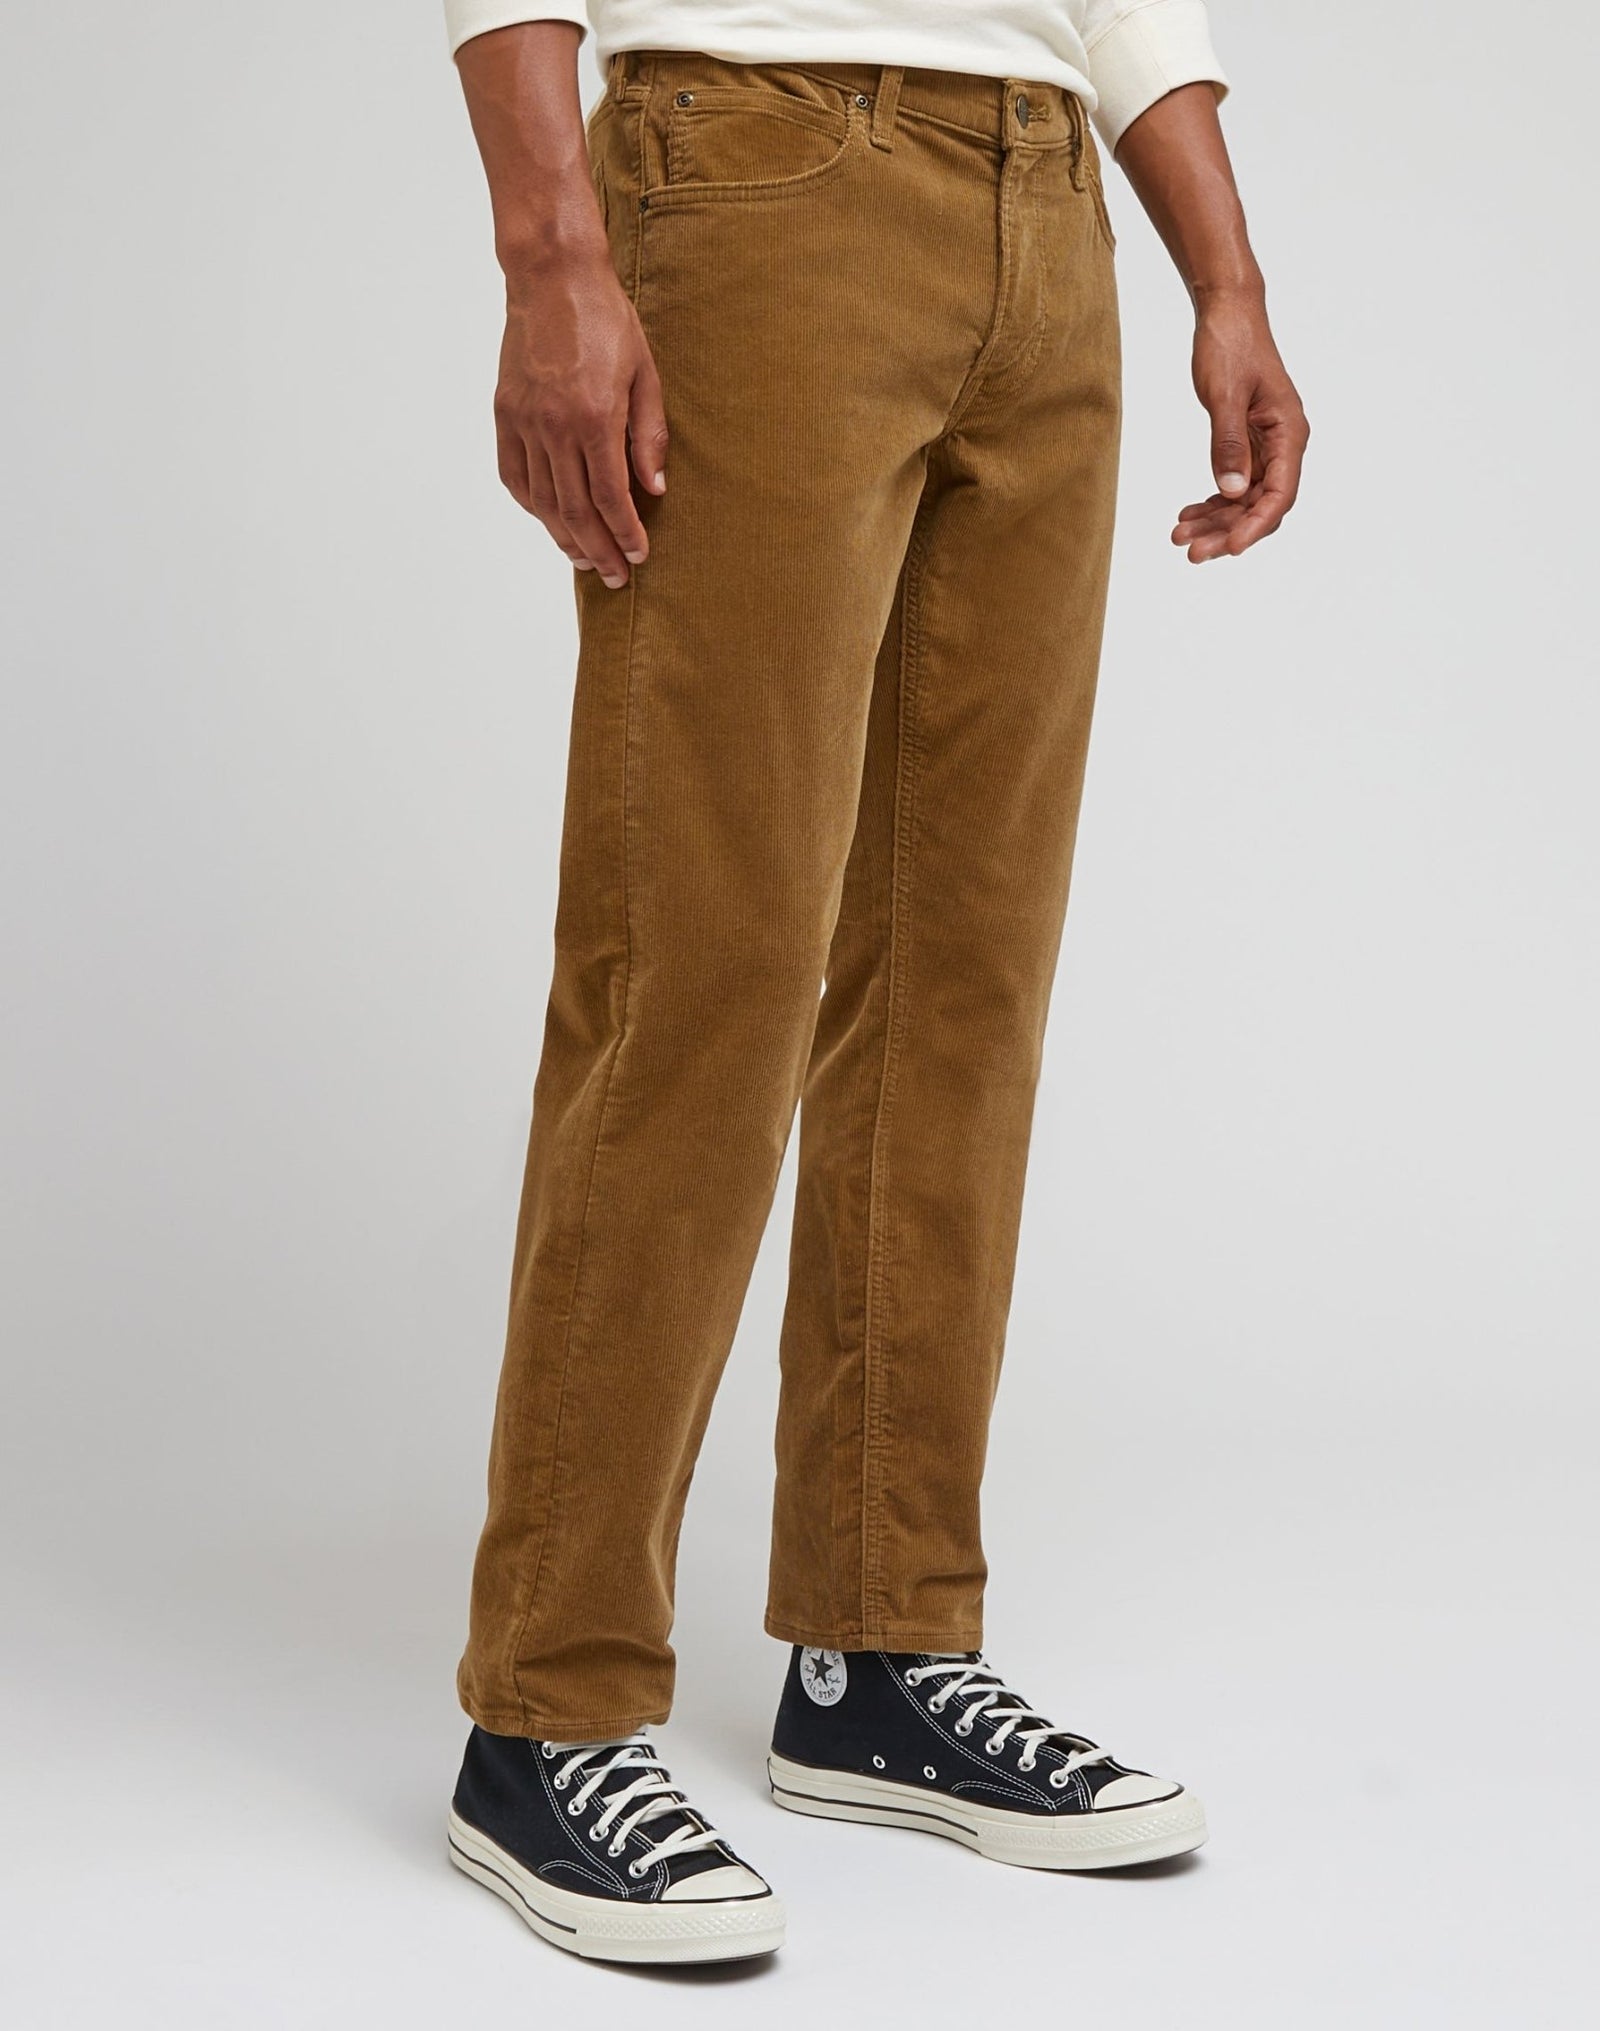 Pantalones vaqueros de hombre de pana Lee Daren zip regular, modelo  L707RL97, de color beige